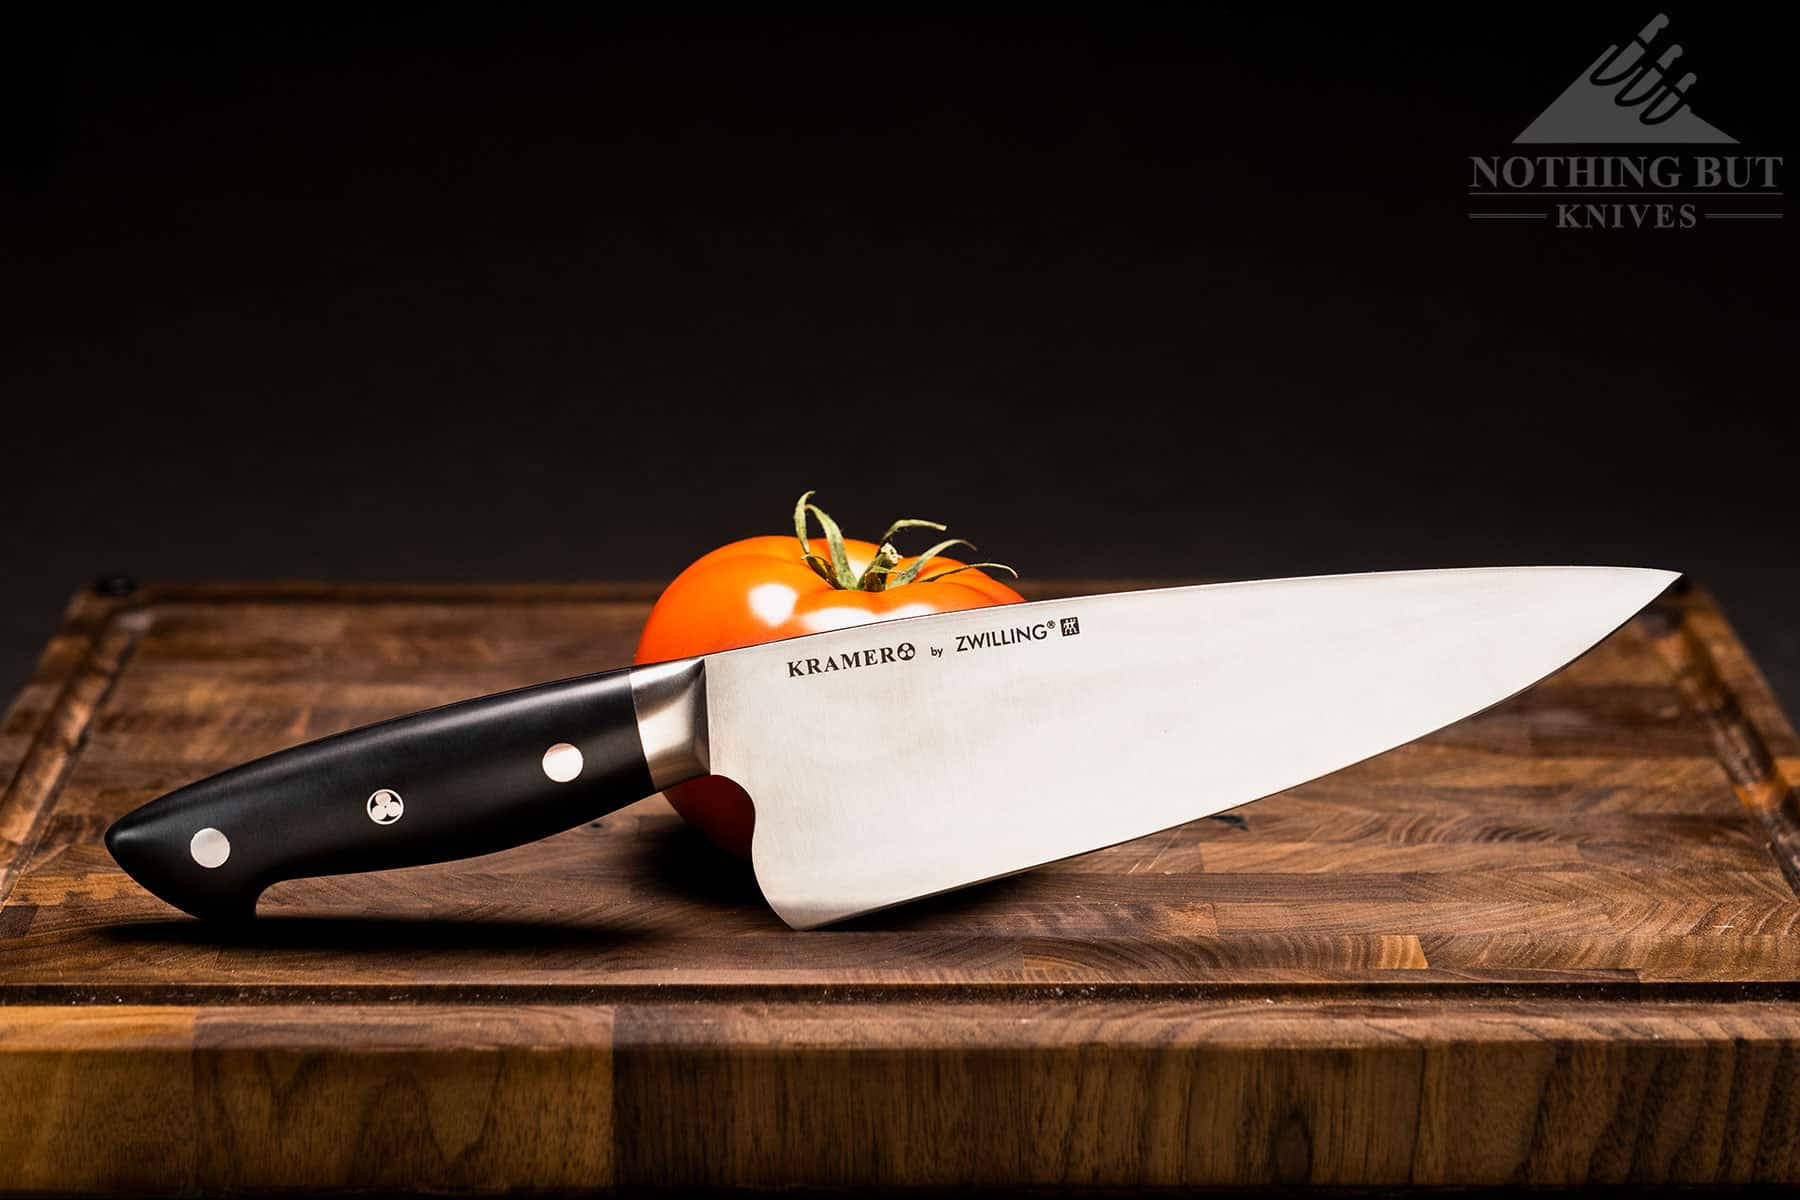 https://www.nothingbutknives.com/wp-content/uploads/2022/03/Bob-Kramer-Zwilling-Chef-Knife-Review.jpg